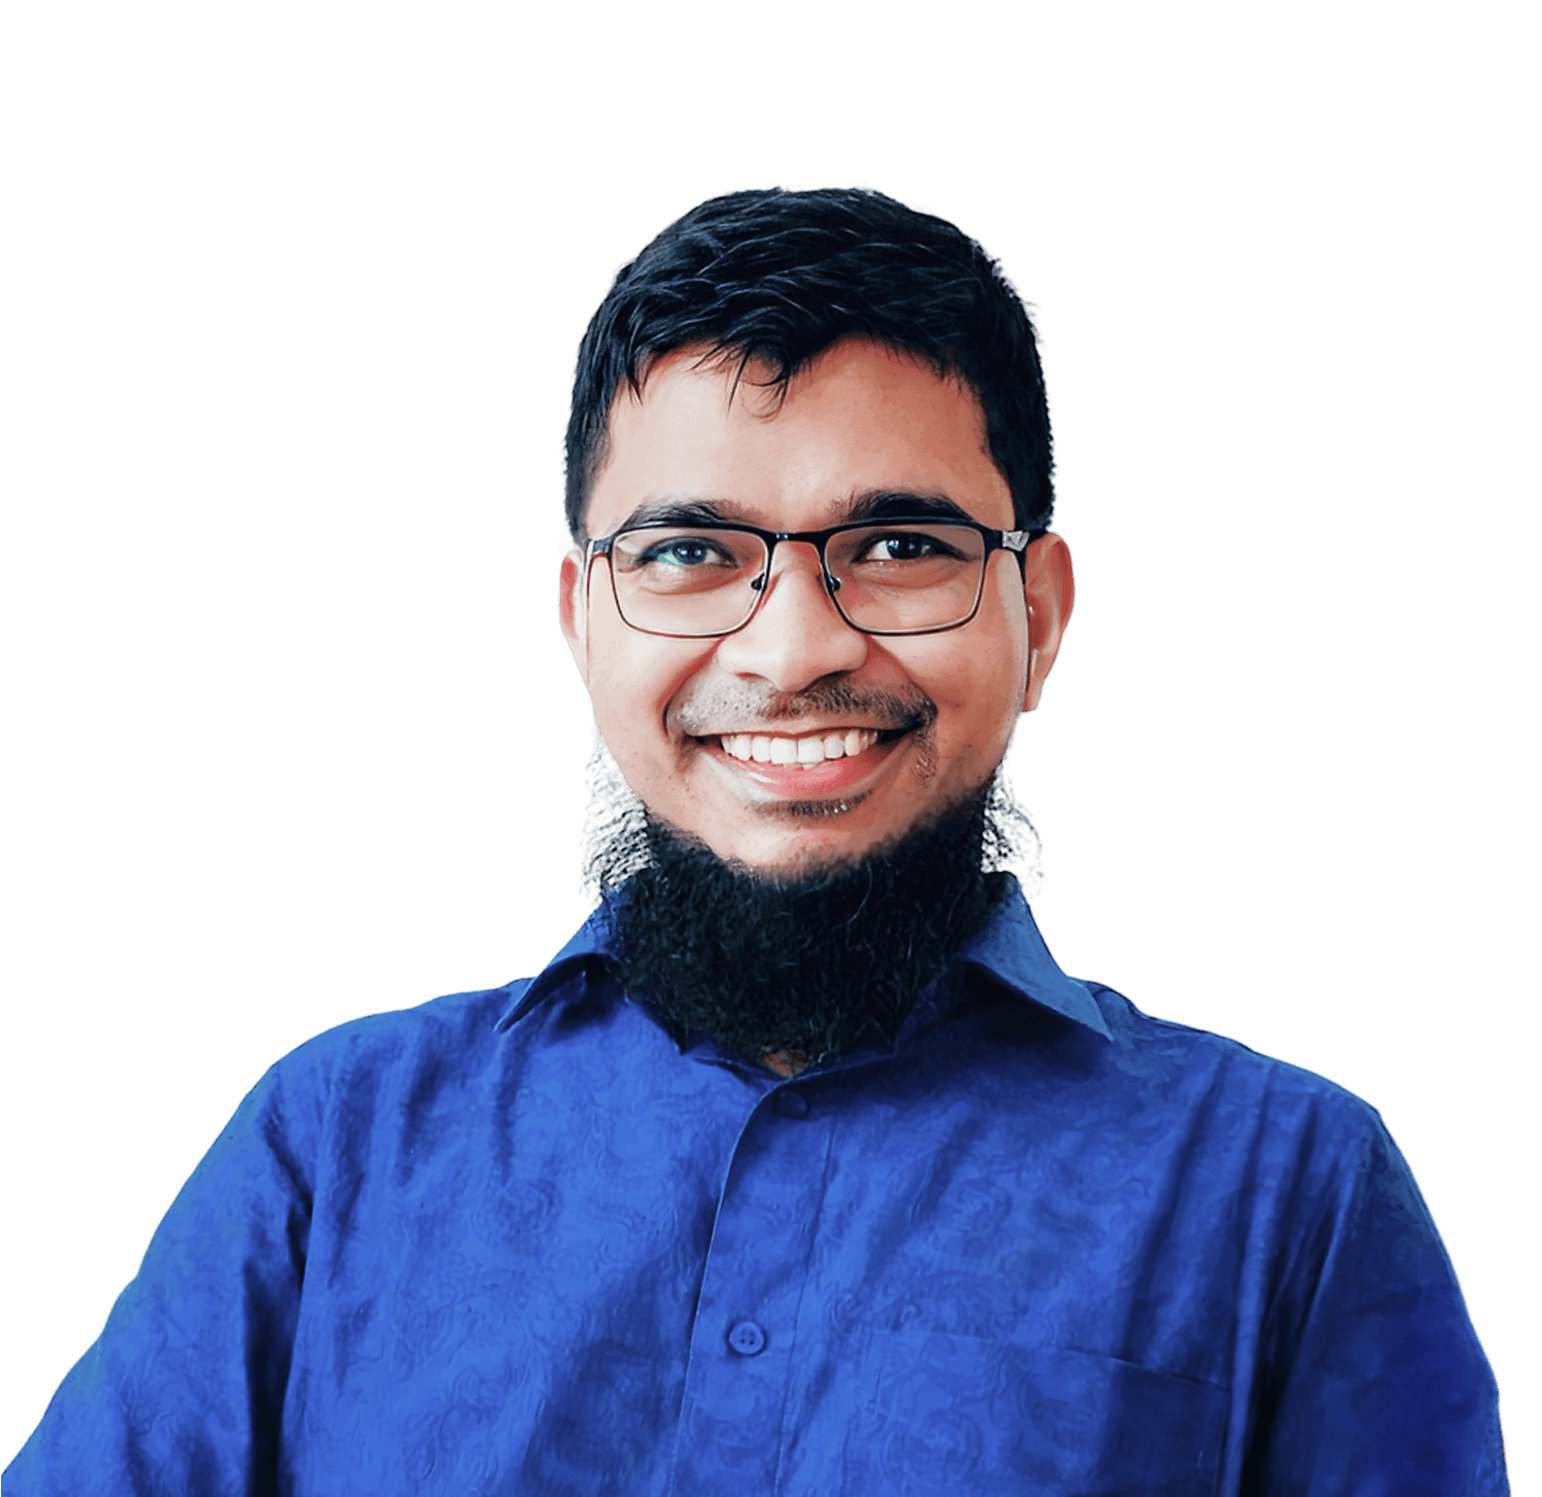 Anamoul Rouf, Product Designer, UX Designer, User Centered Product Designer, User Experience Designer, Human Experience Designer, Problem Solver, Researcher, AR & VR Enthusiast, Dhaka, Bangladesh